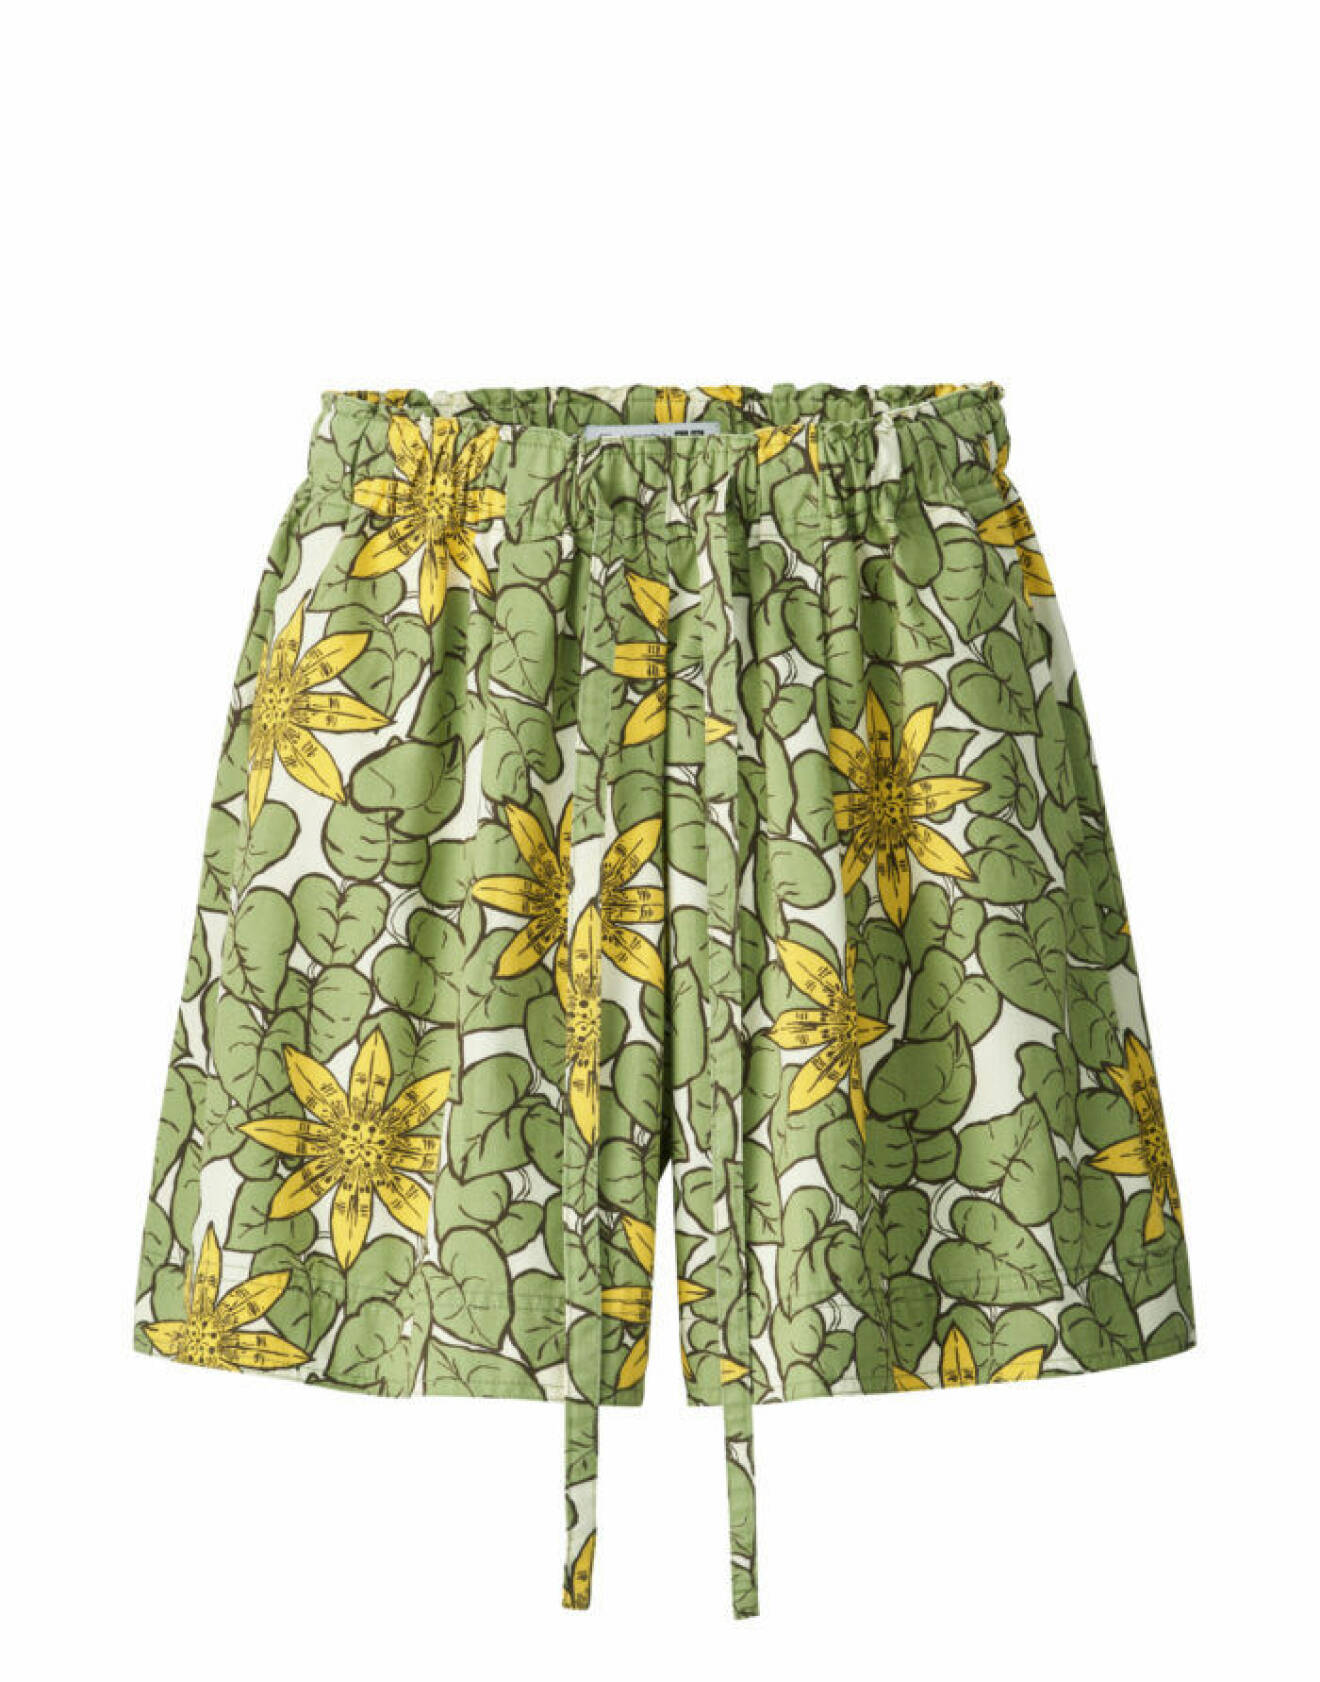 Grönmönstrade shorts med dragsko i midjan